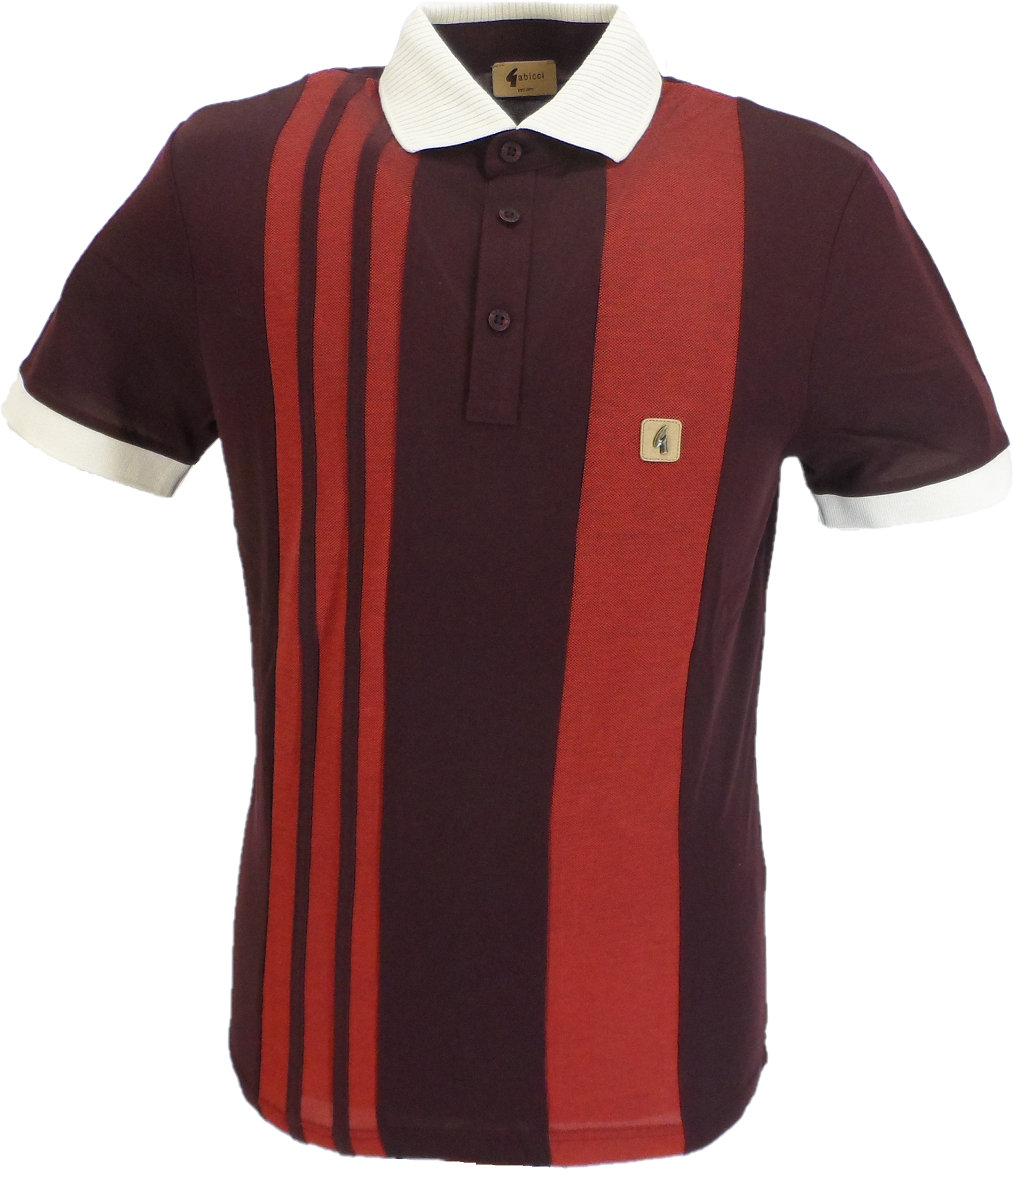 Gabicci Vintage Mens Rioja Red Stripe Retro Polo Shirt